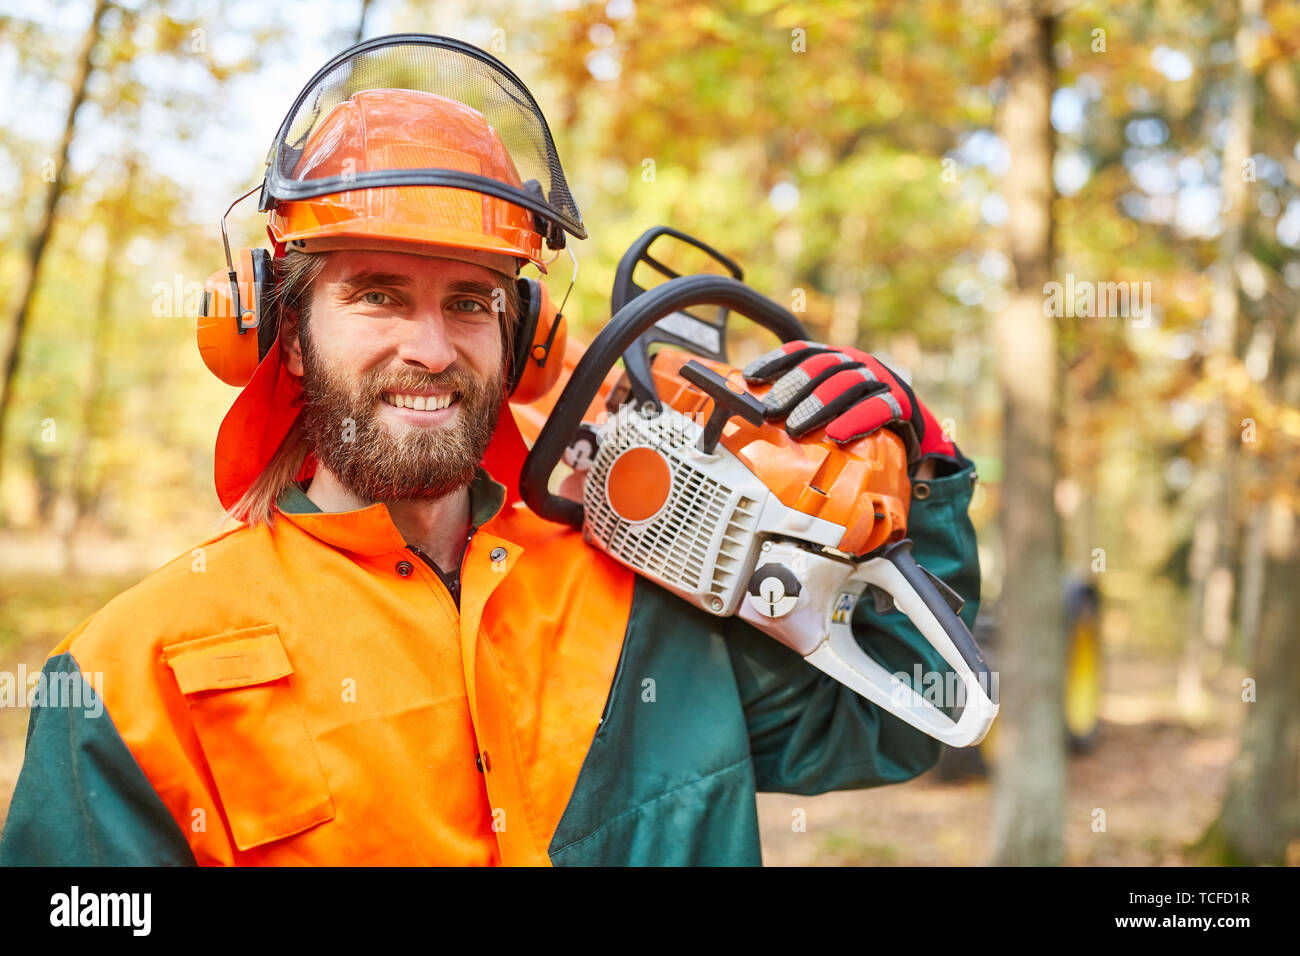 Holzfäller oder Waldarbeiter mit Motorsäge und Schutzausrüstung im Wald Stockfoto